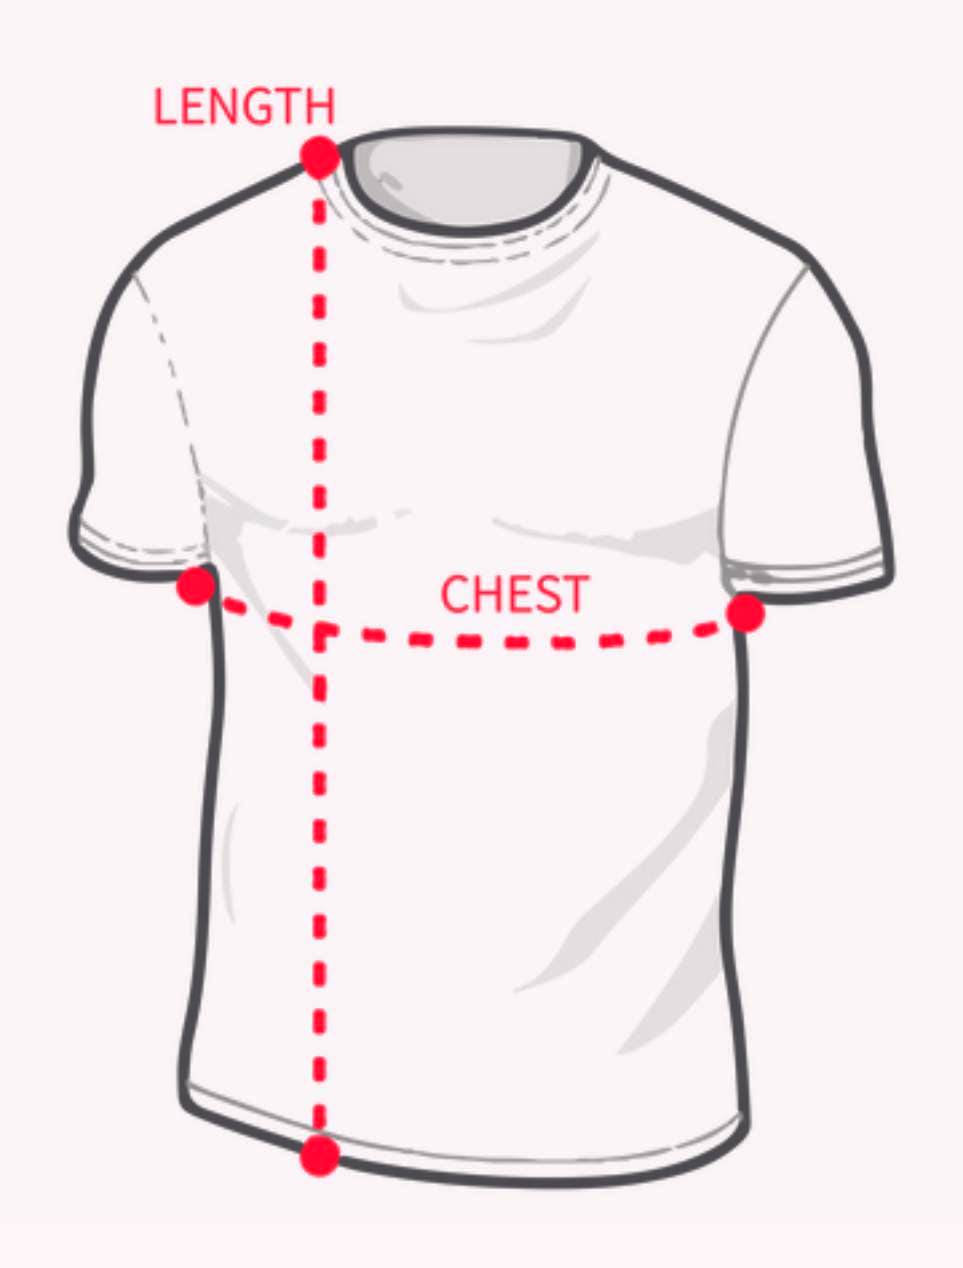 z_HATT T-Shirt - Male_Size L